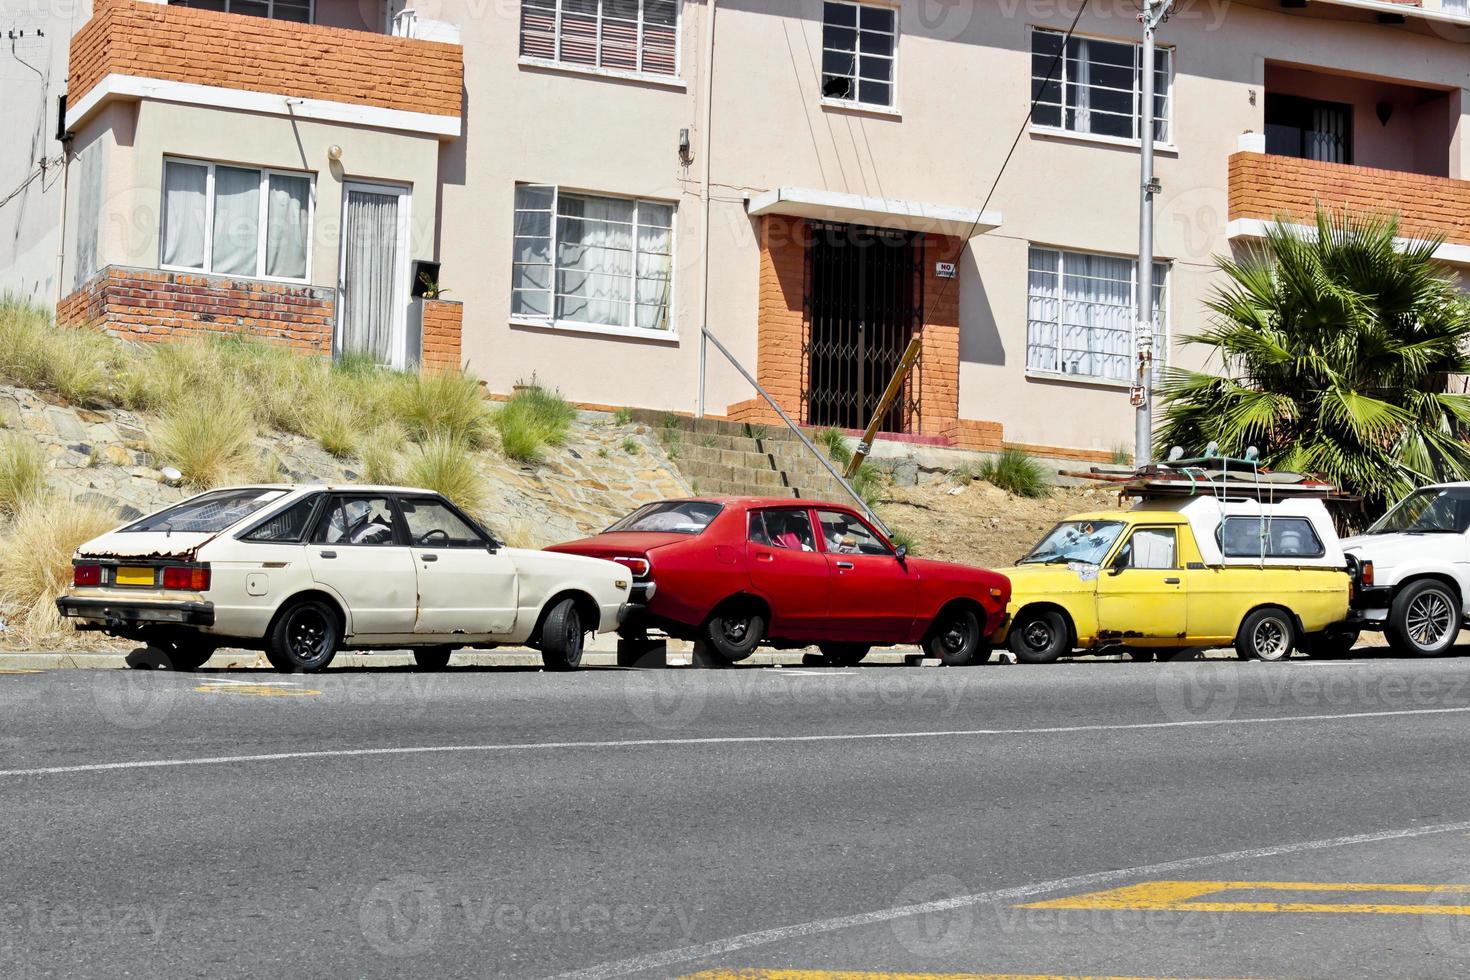 kaputte autowracks in kapstadt, südafrika stadtleben. foto